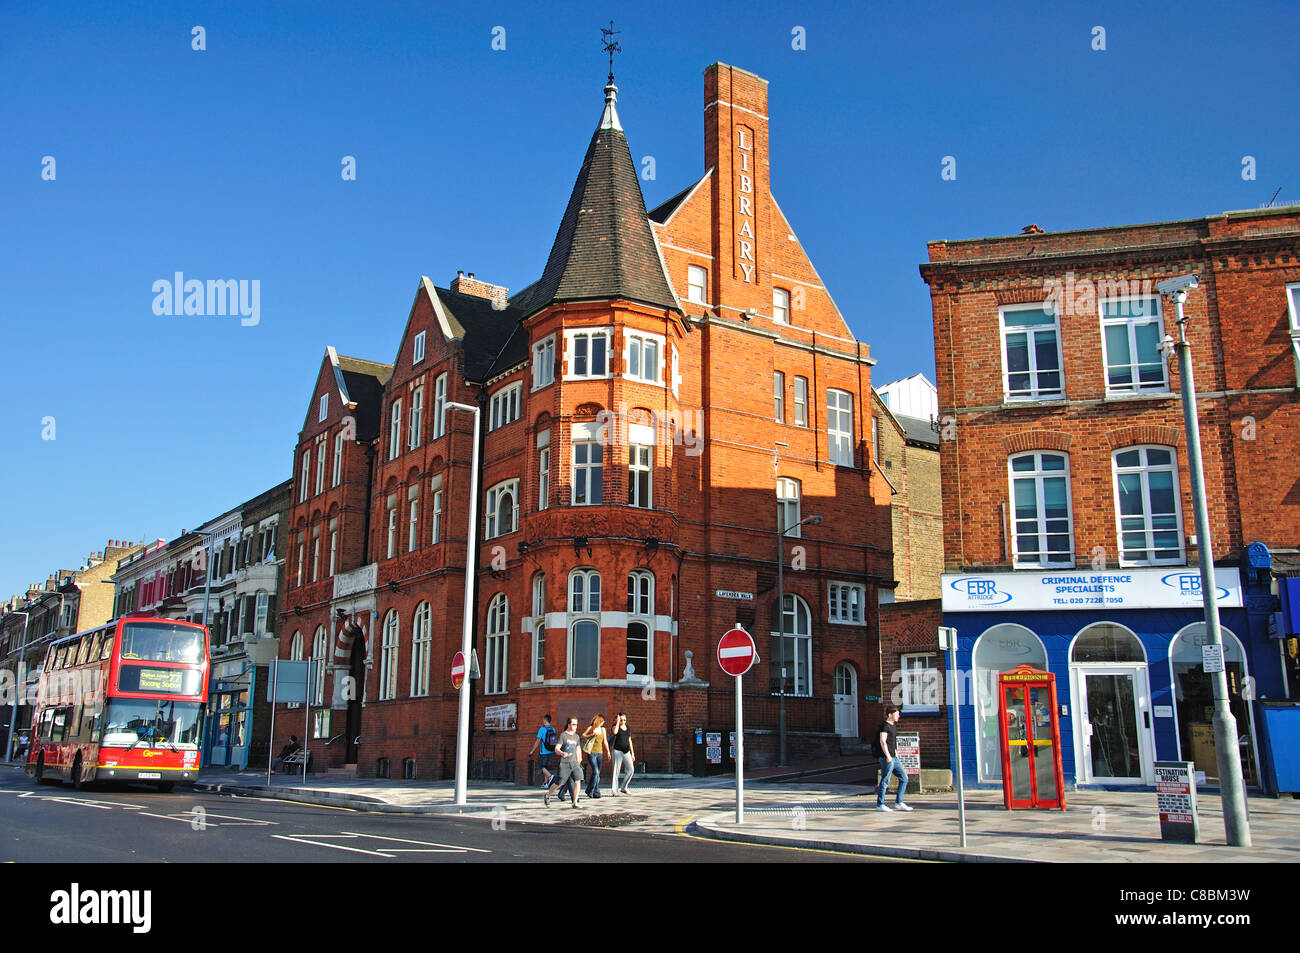 Bibliothèque publique, Lavender Hill, Clapham Junction, Battersea, London Borough of Wandsworth, Londres, Angleterre, Royaume-Uni Banque D'Images